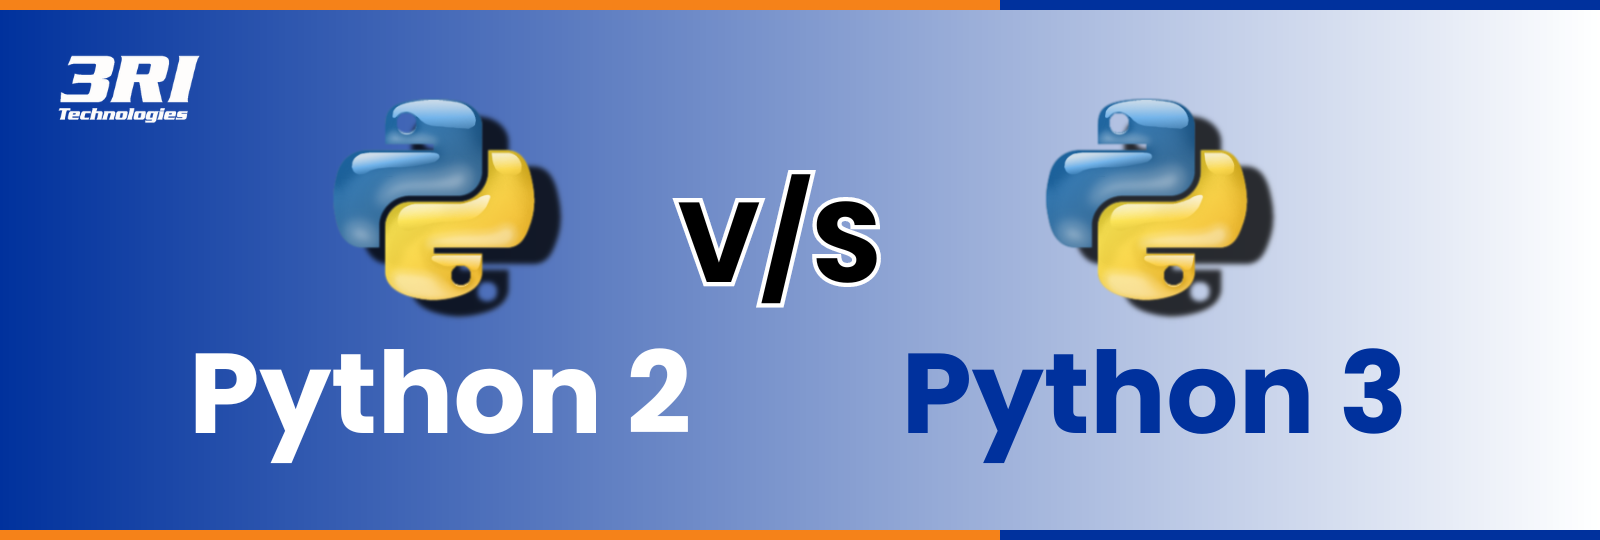 python 2 versus python 3